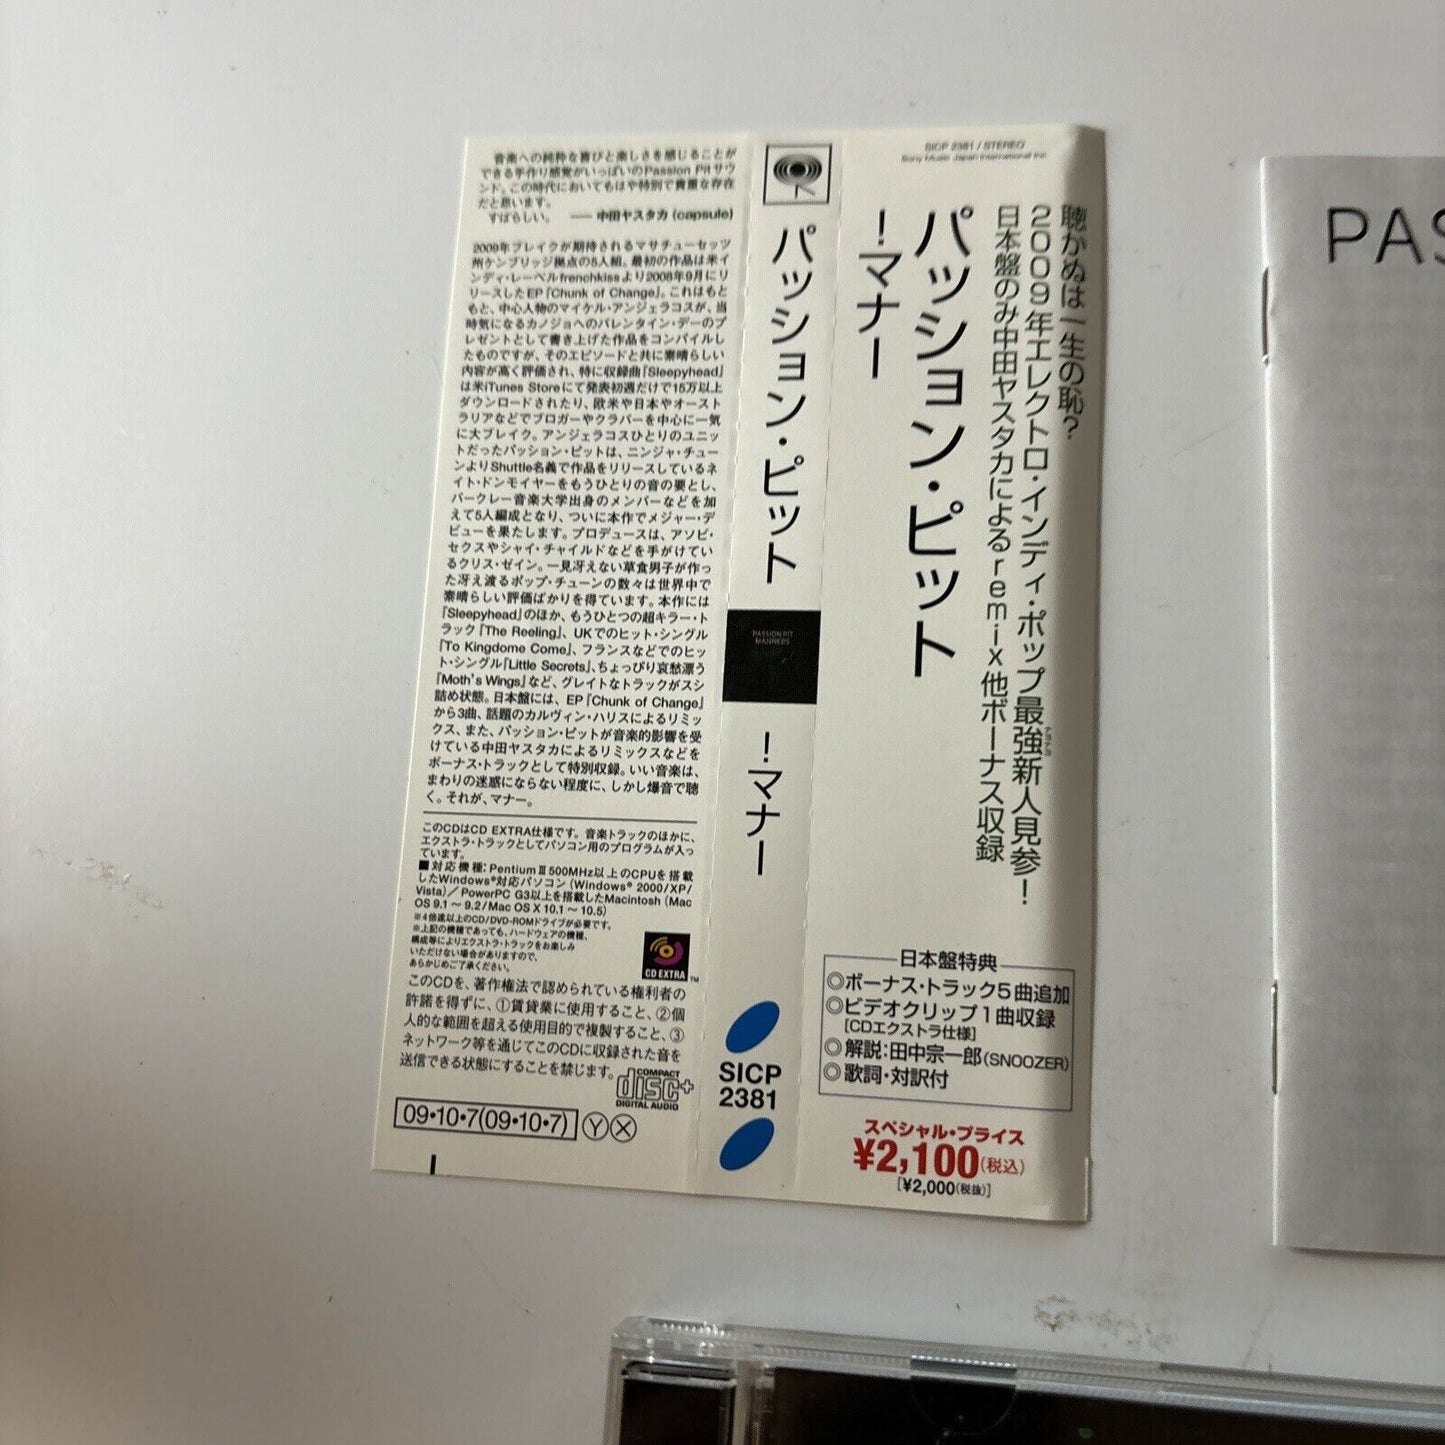 Passion Pit - Manners (Japan Bonus Tracks) (CD, 2009) Japan Obi Sicp-2381